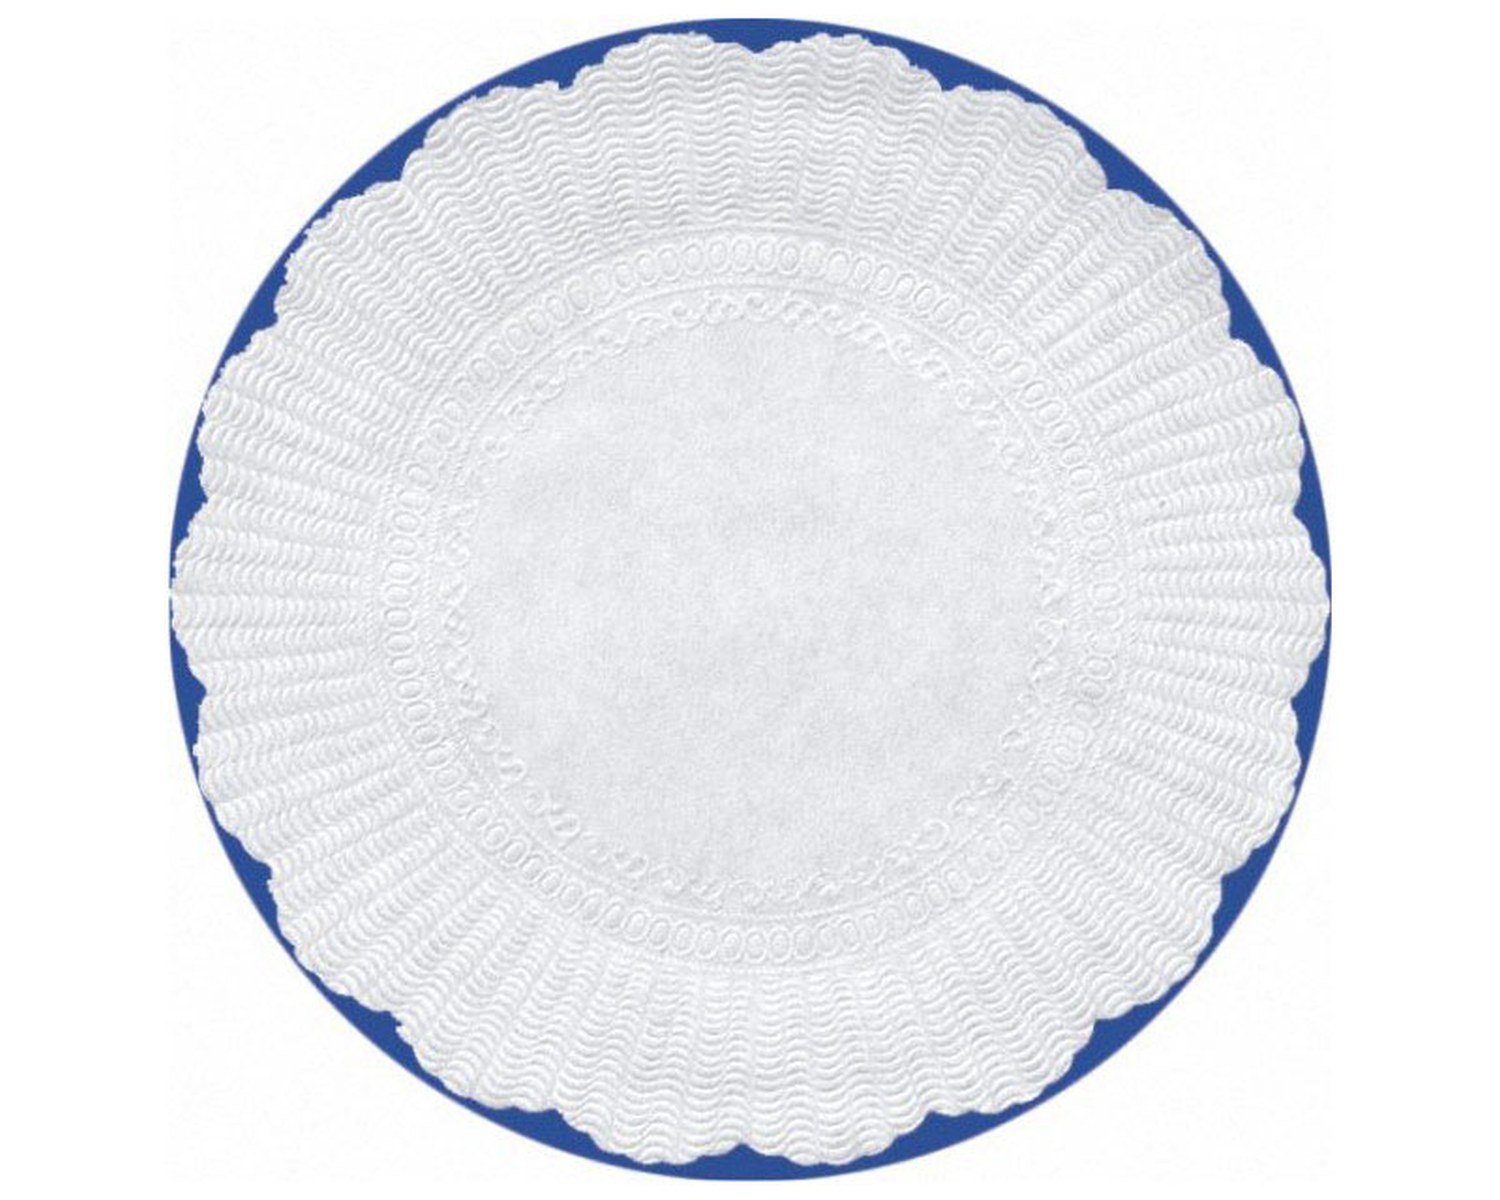 Plattenpapiere, rund, weiß, Ø 30 cm, 500 Stk.